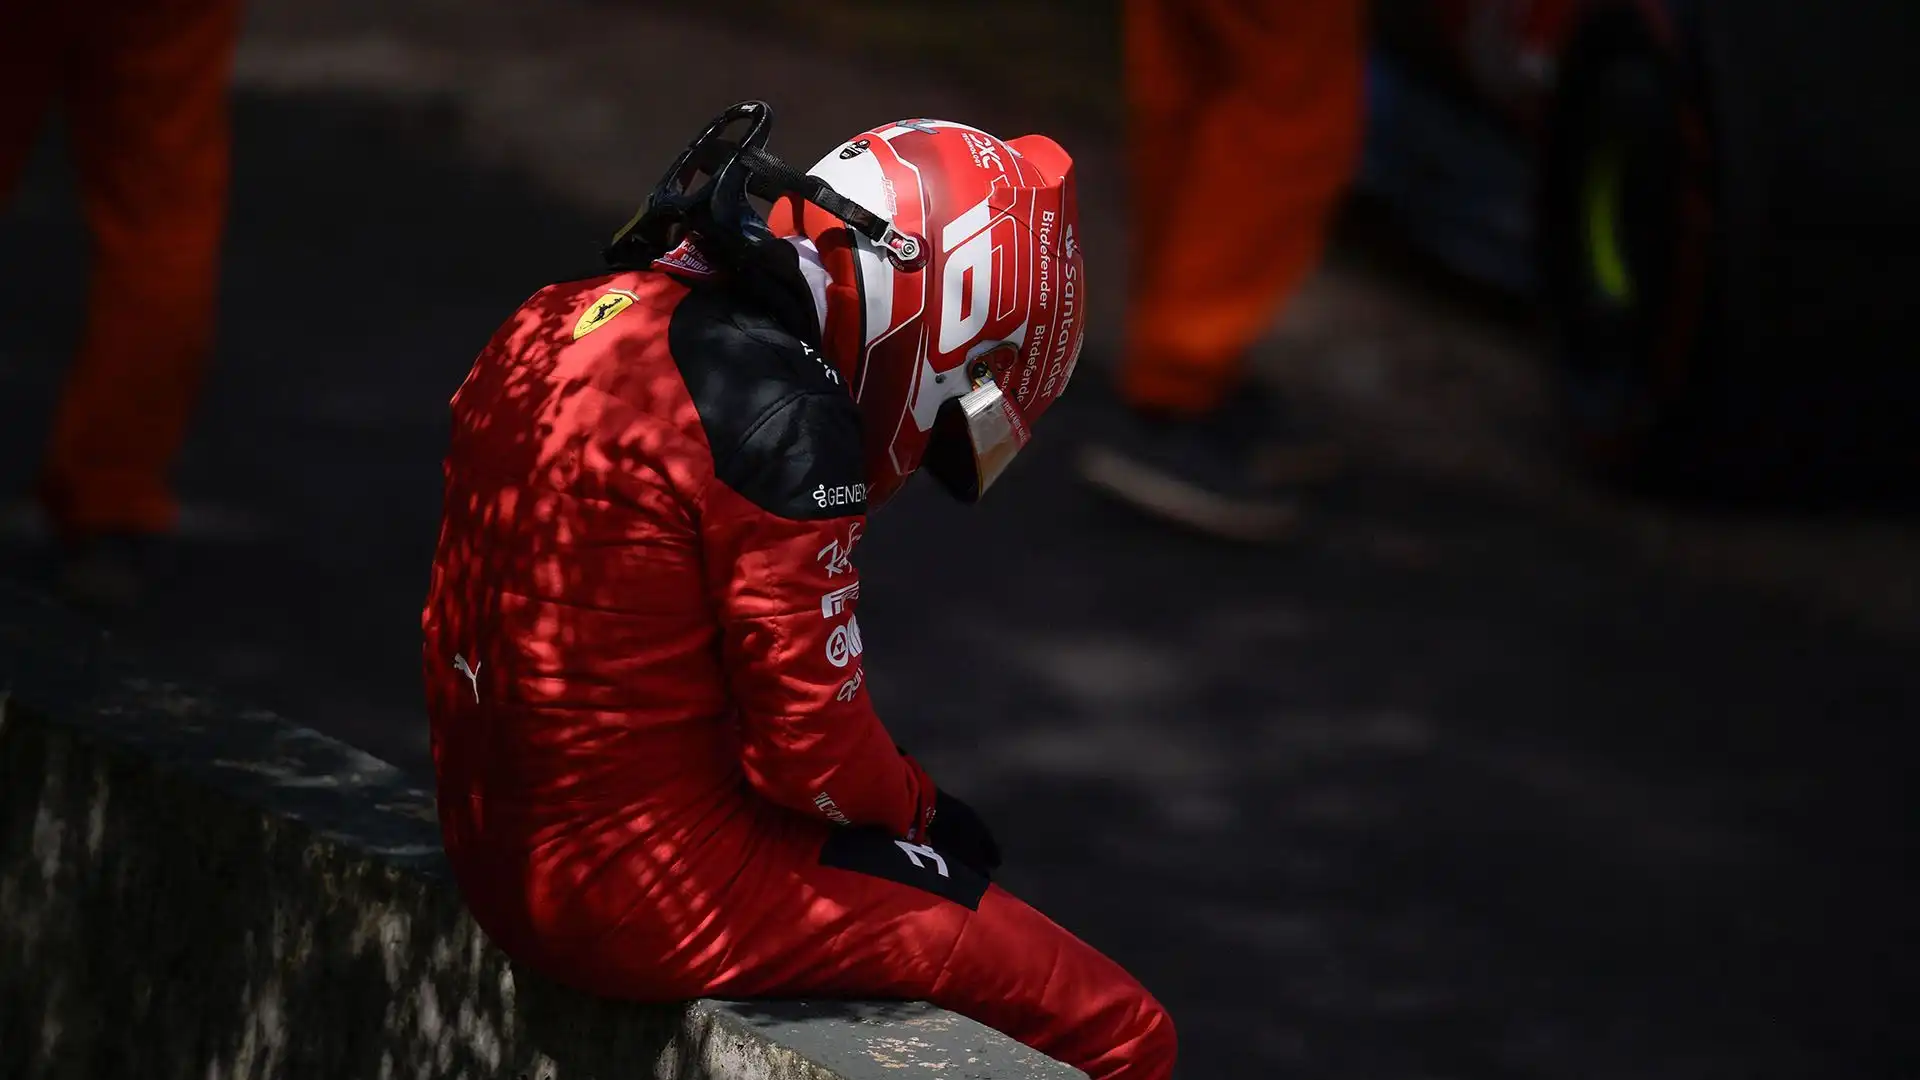 Il Gran Premio del Brasile di Leclerc è finito ancora prima della partenza